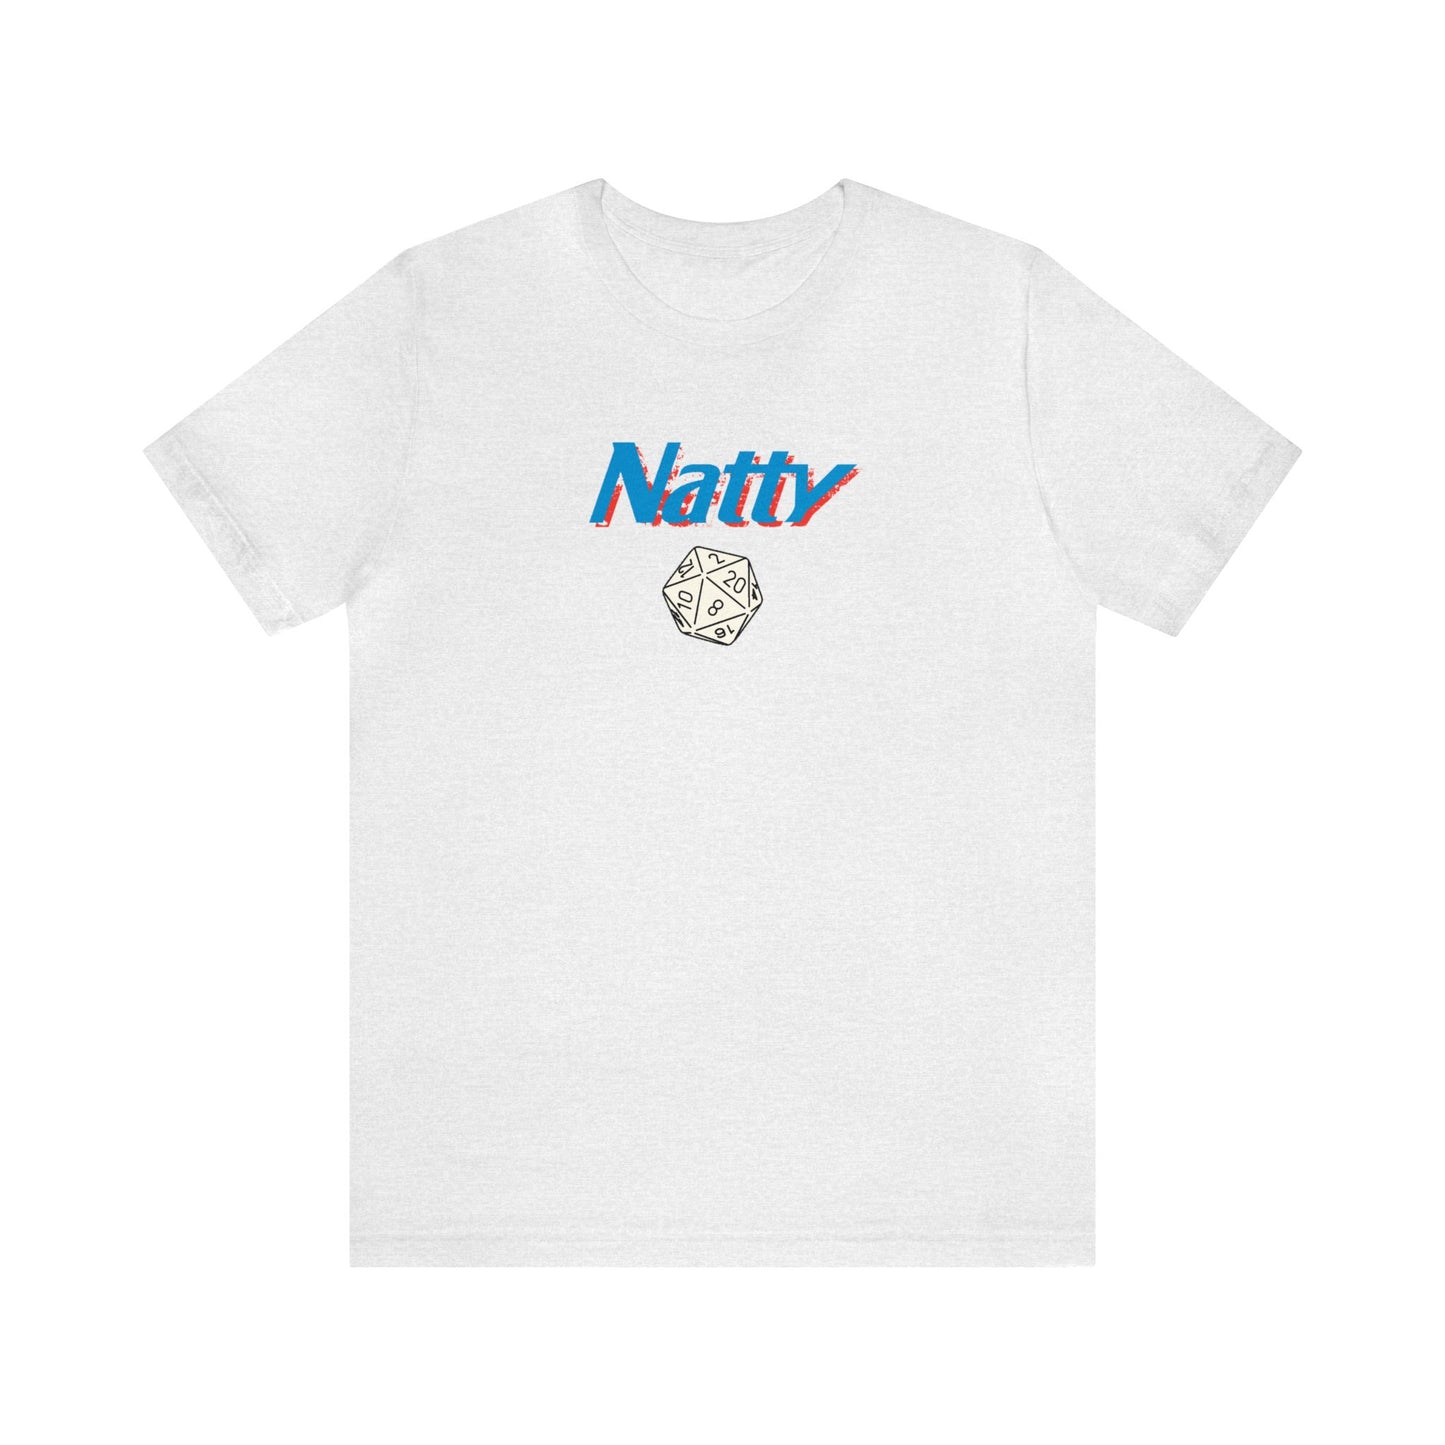 Natty 20 Unisex Jersey Short Sleeve Tee